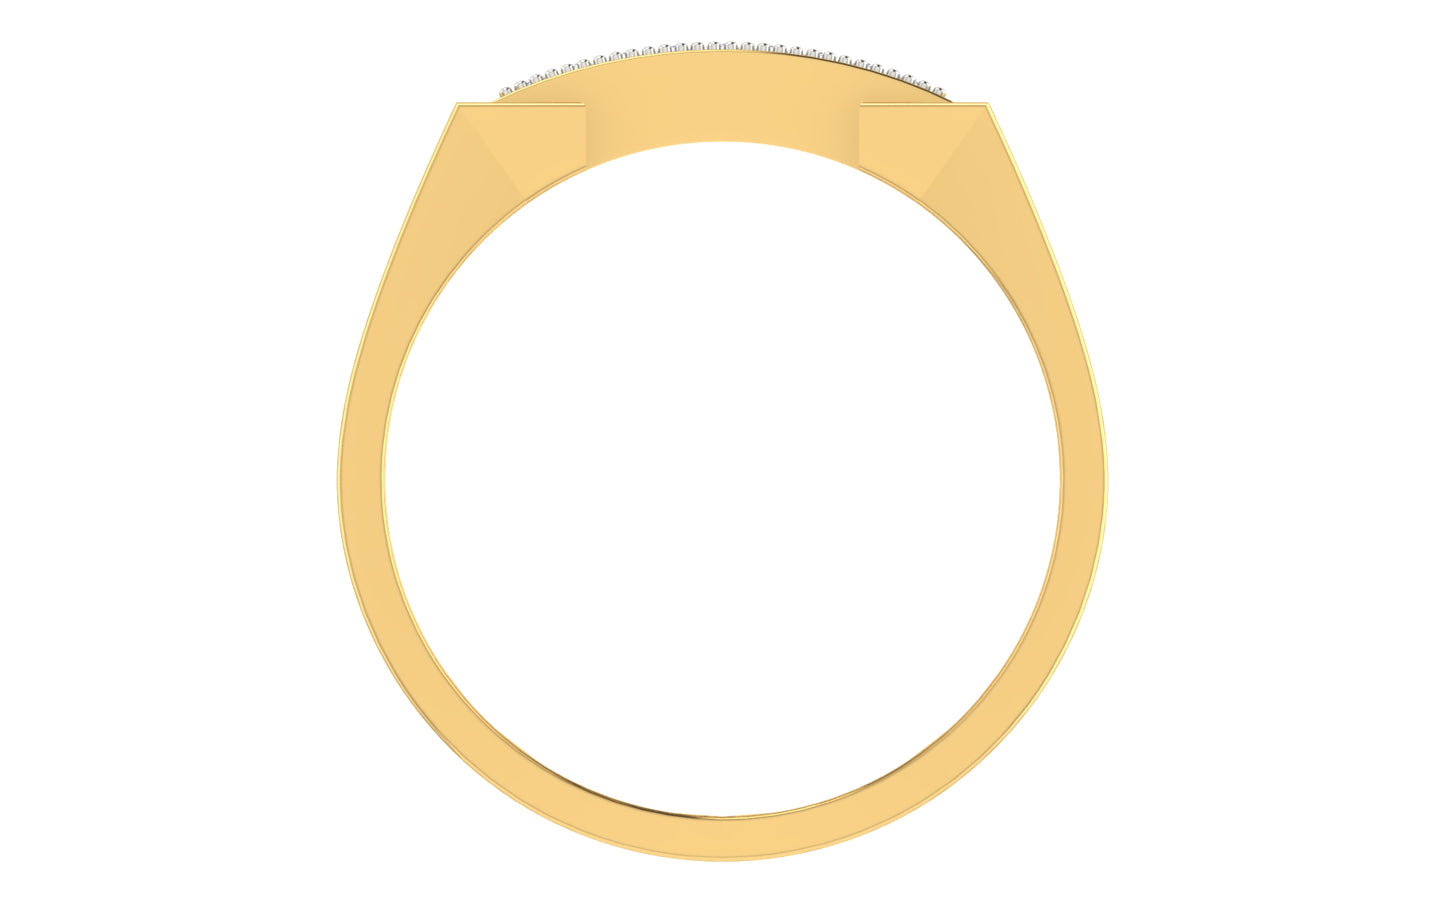 3D Jewelry Files Ring Model 3DM ZA RN 4220